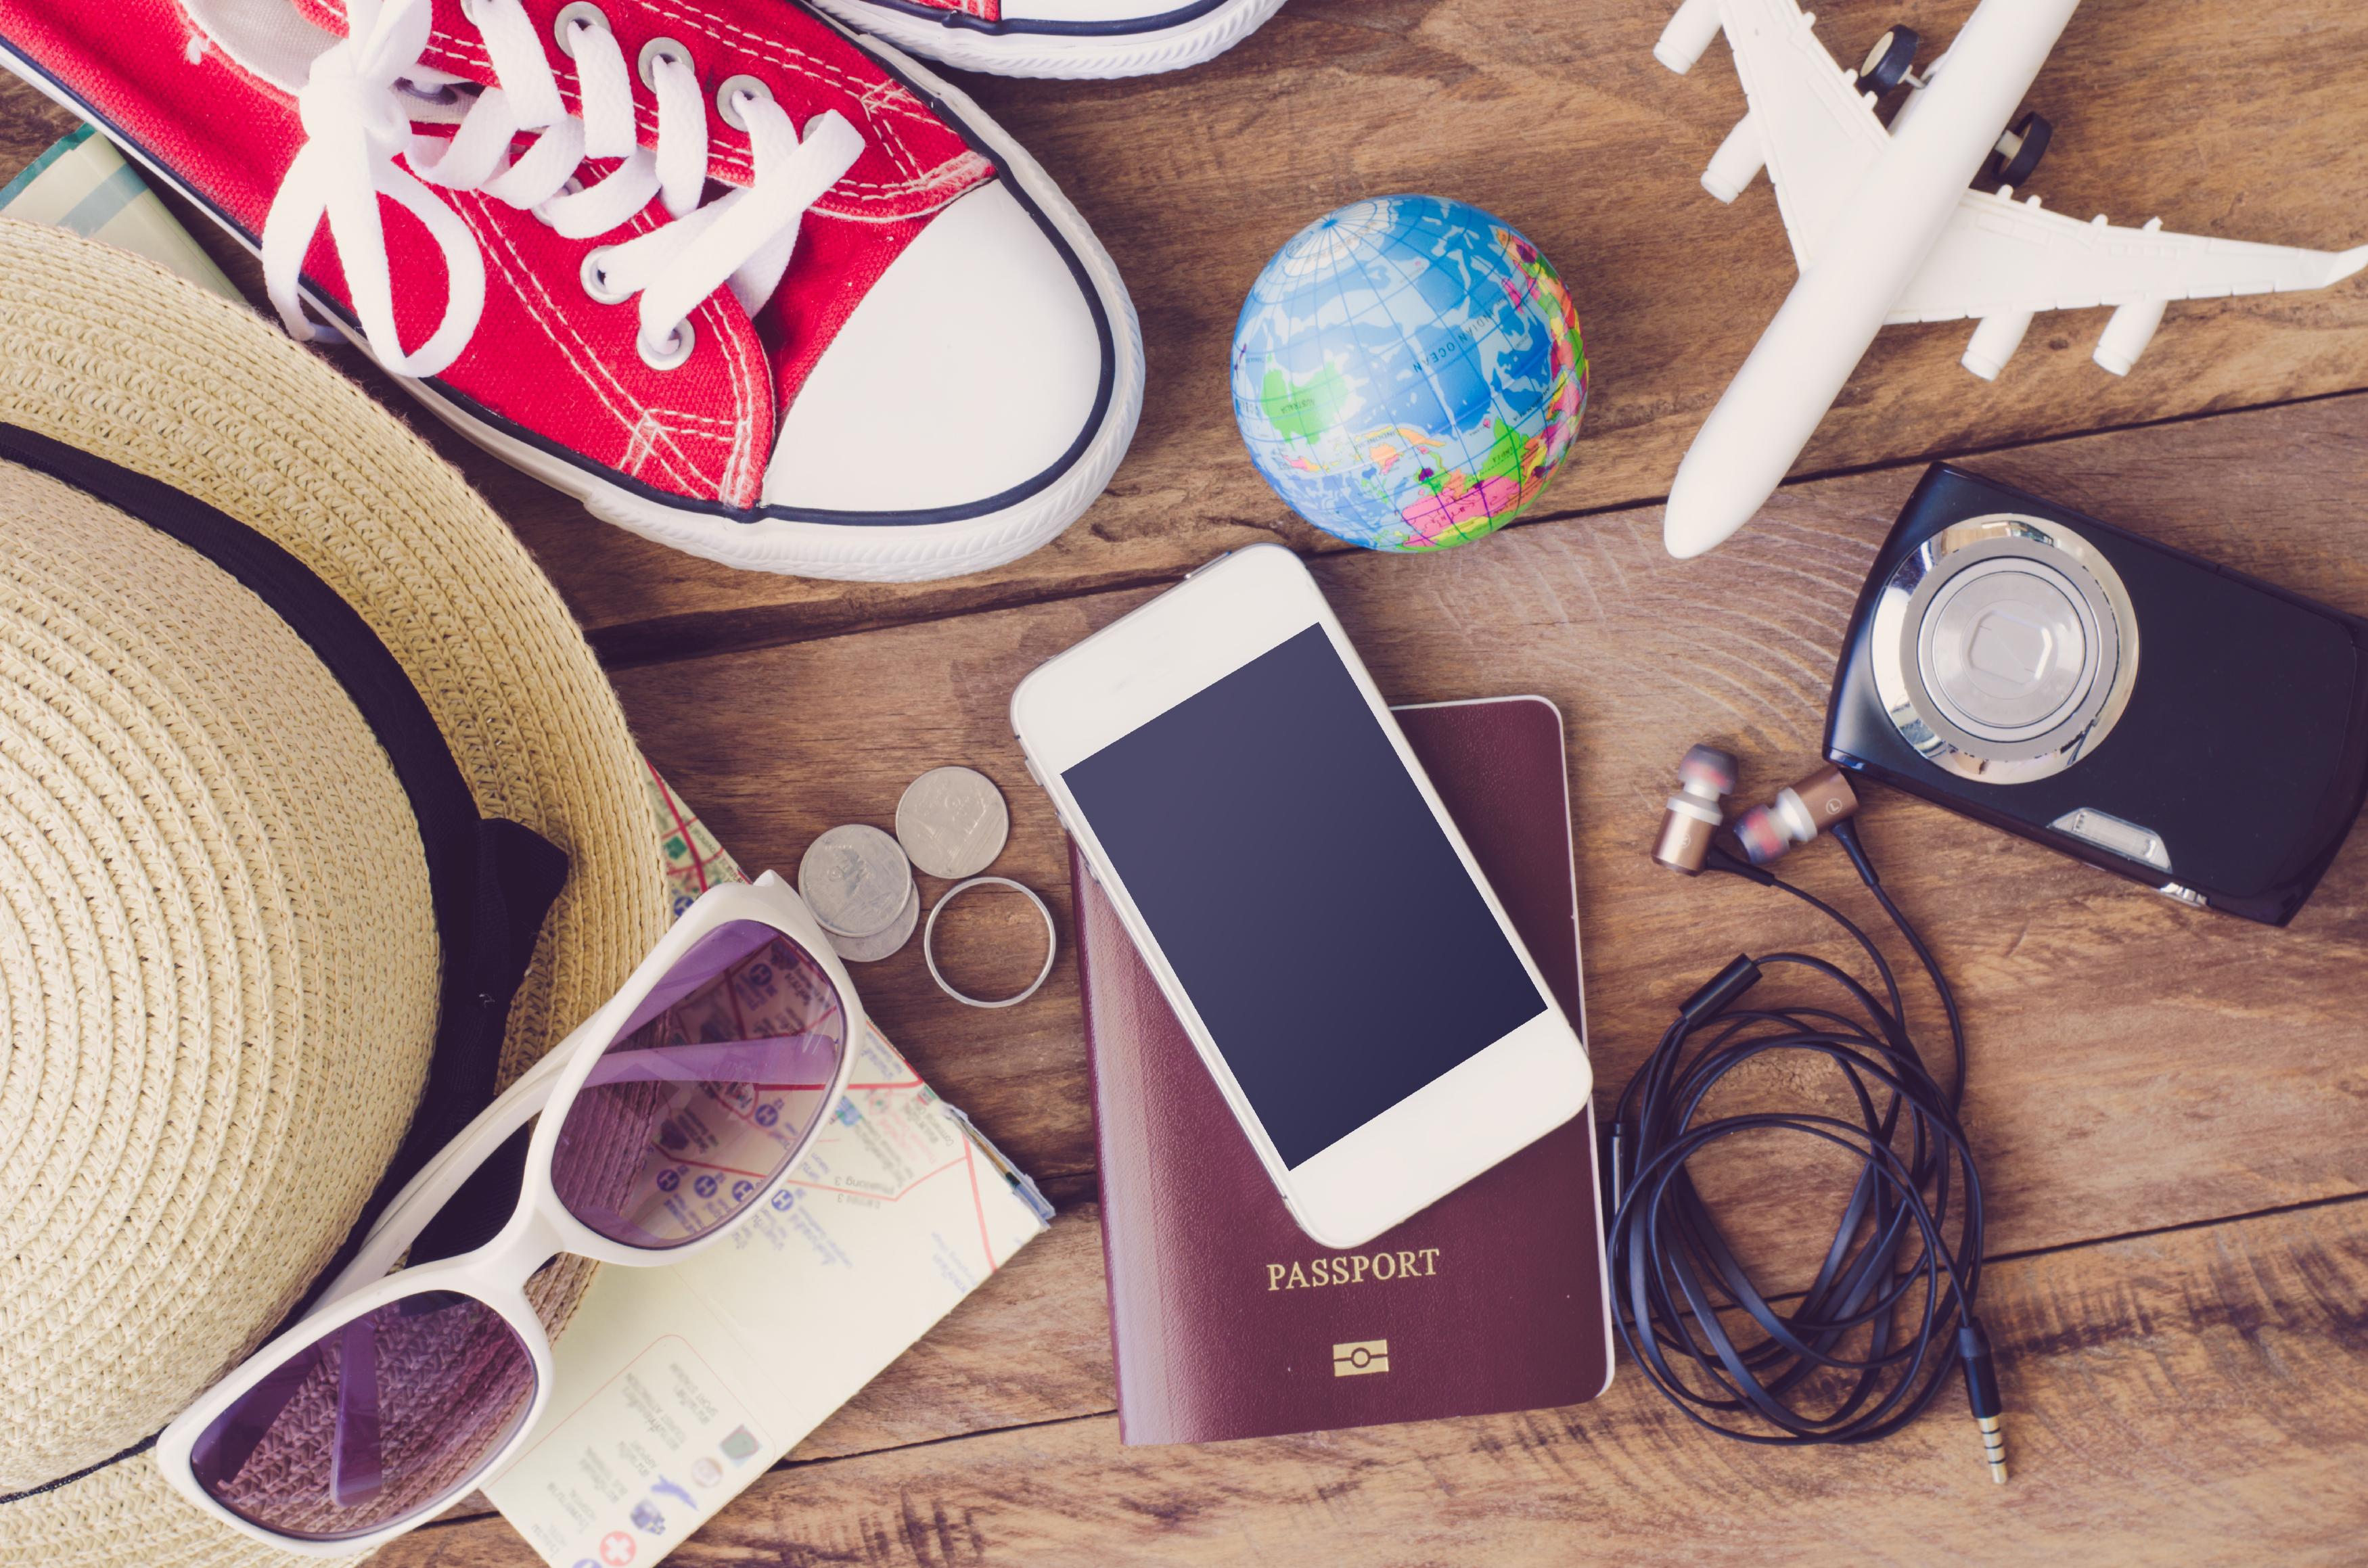 Kit de voyage d'un étudiant : passeport, basket, lunette de soleil...